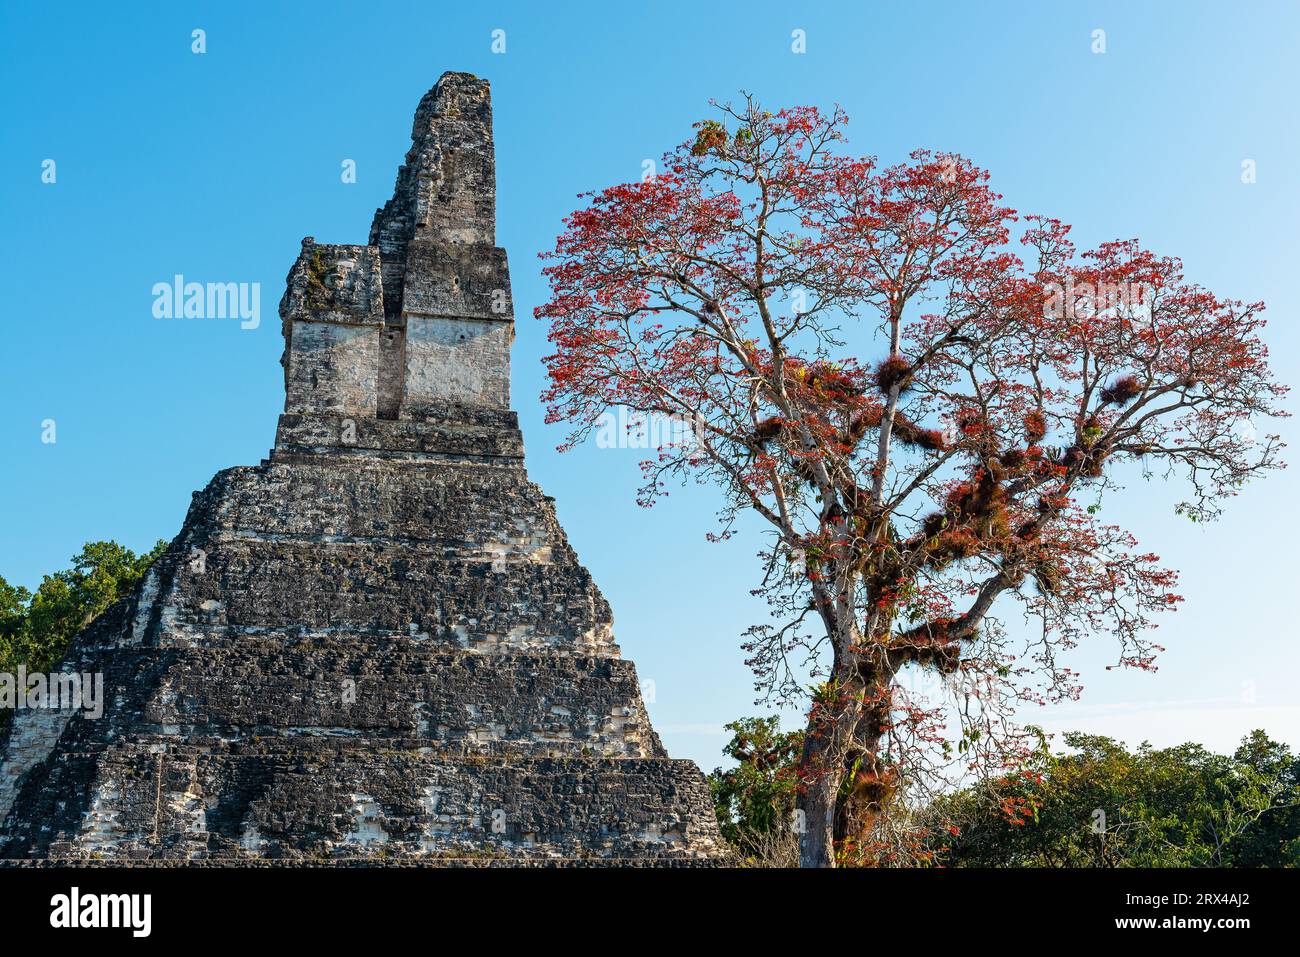 Piramide del tempio Maya Jaguar e albero tropicale con fiori rossi della giungla di Peten, Tikal, Guatemala. Foto Stock